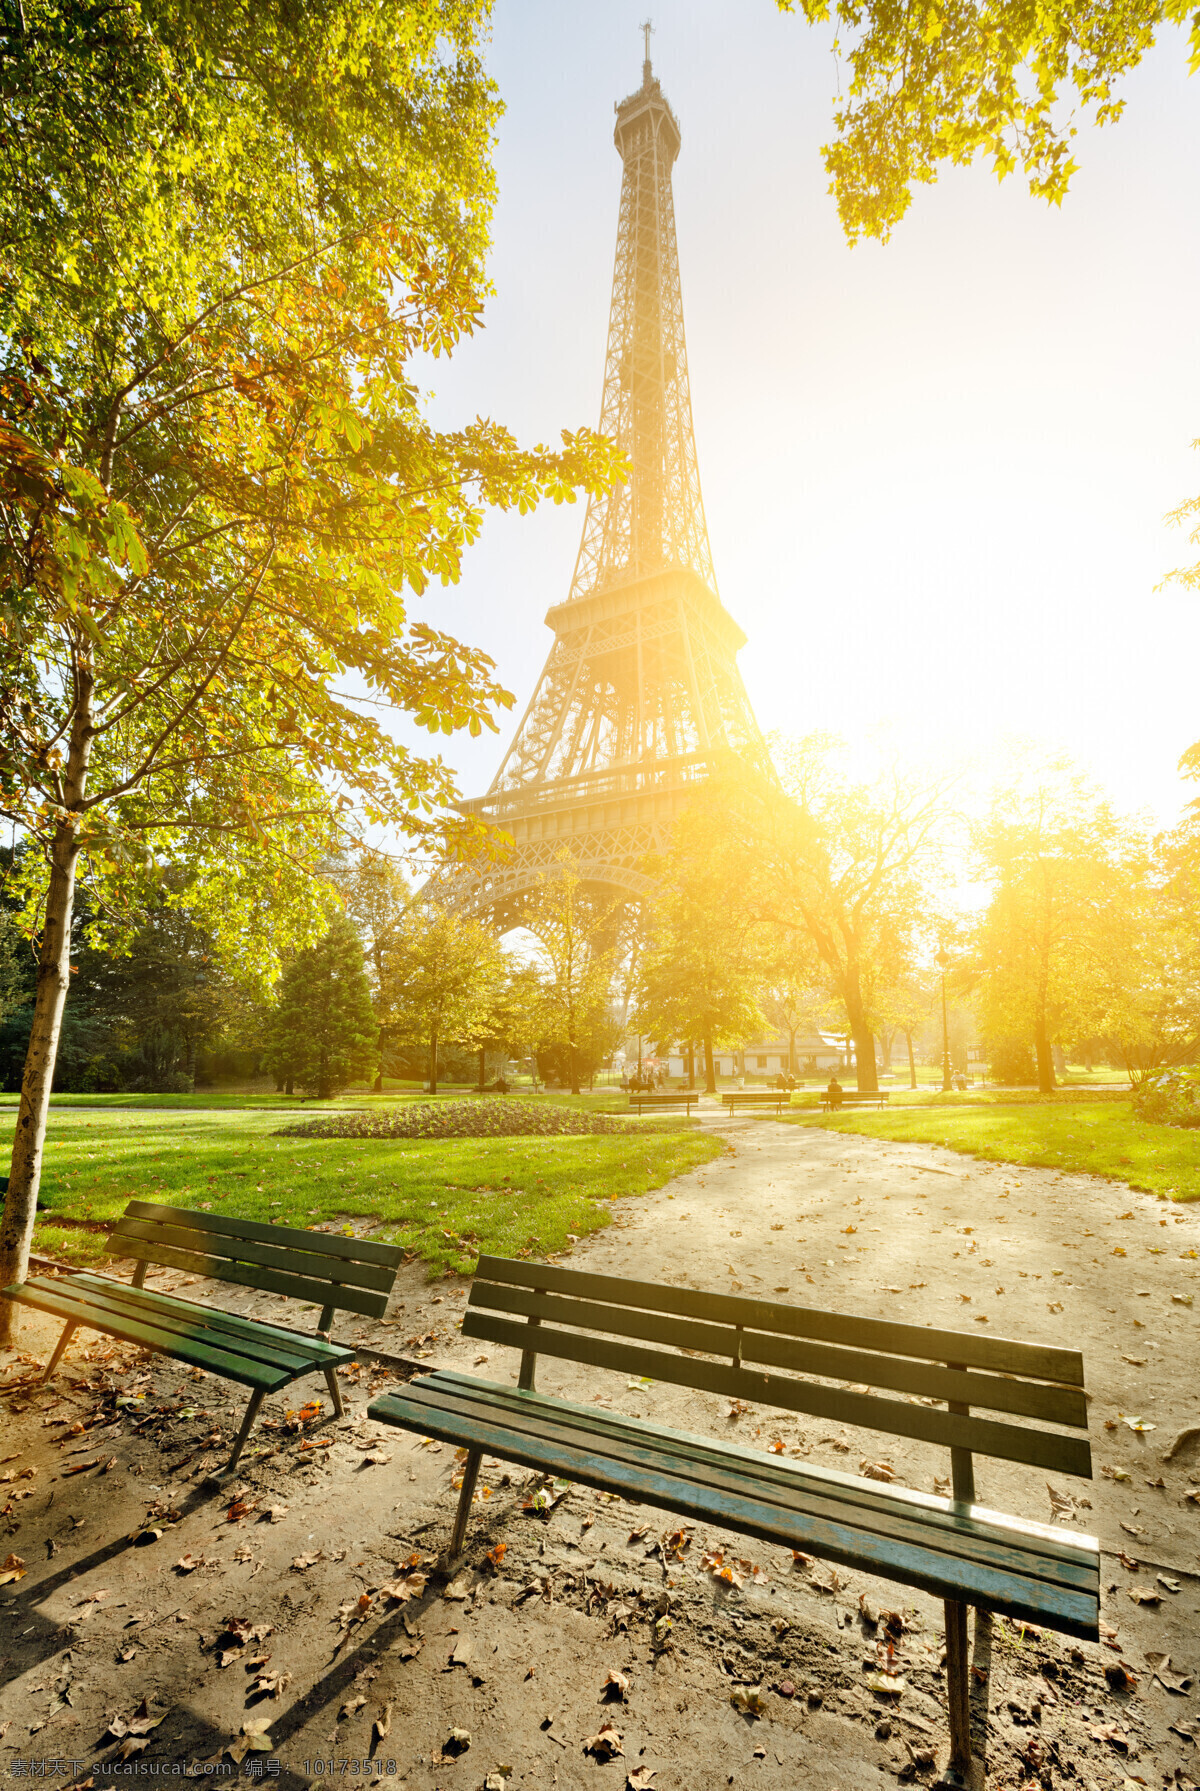 艾菲尔铁塔 风景 建筑风光 城市图片 法国建筑 巴黎风光 铁塔 都市风光 美丽风光 美丽风景 名胜古迹 风景名胜 风景图片